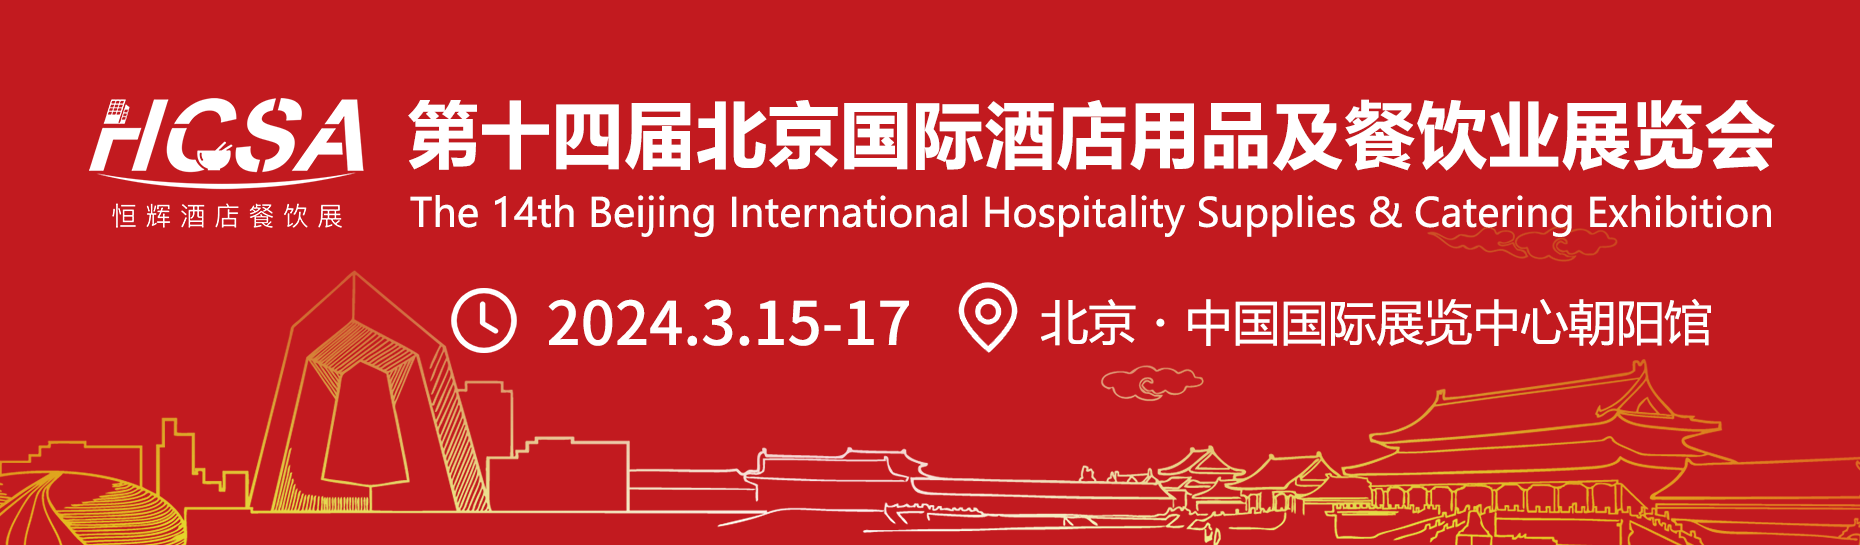 2024全国预制菜展会时间列表-第十四北京预制菜产业博览会-